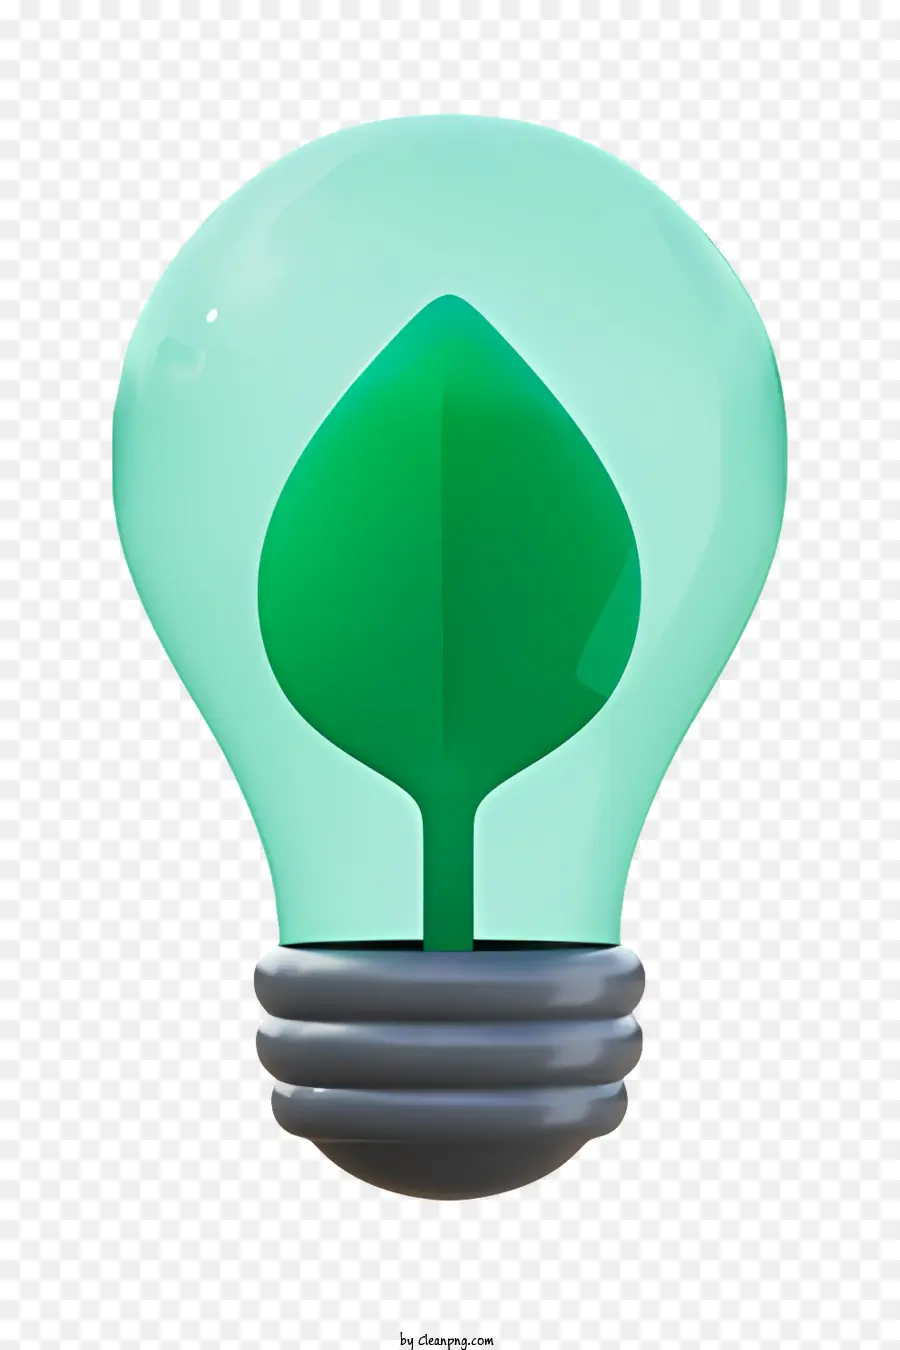 grünes Blatt - Blatt in der Glühbirne, beide beleuchtet